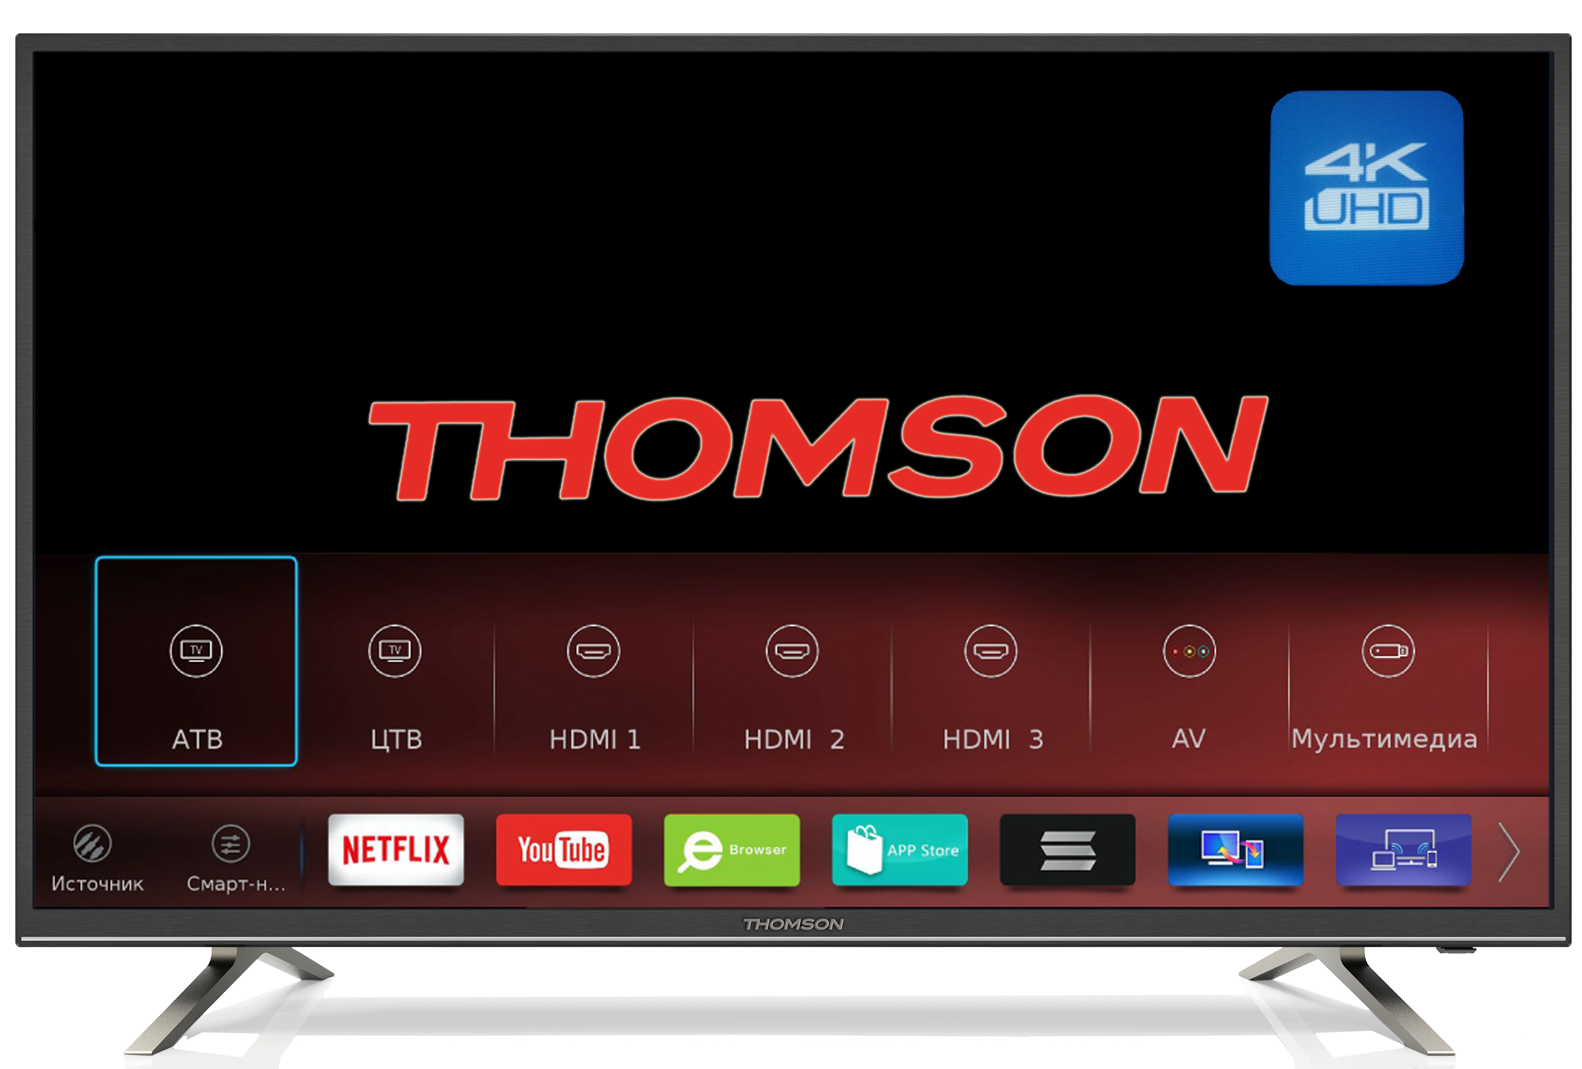 Телевизор Thomson 49t49usl5210. Thomson телевизор 49 Thomson. Телевизор Thomson t55usl5210 54.6" (2018). Томсон t55usl5210 подсветка.